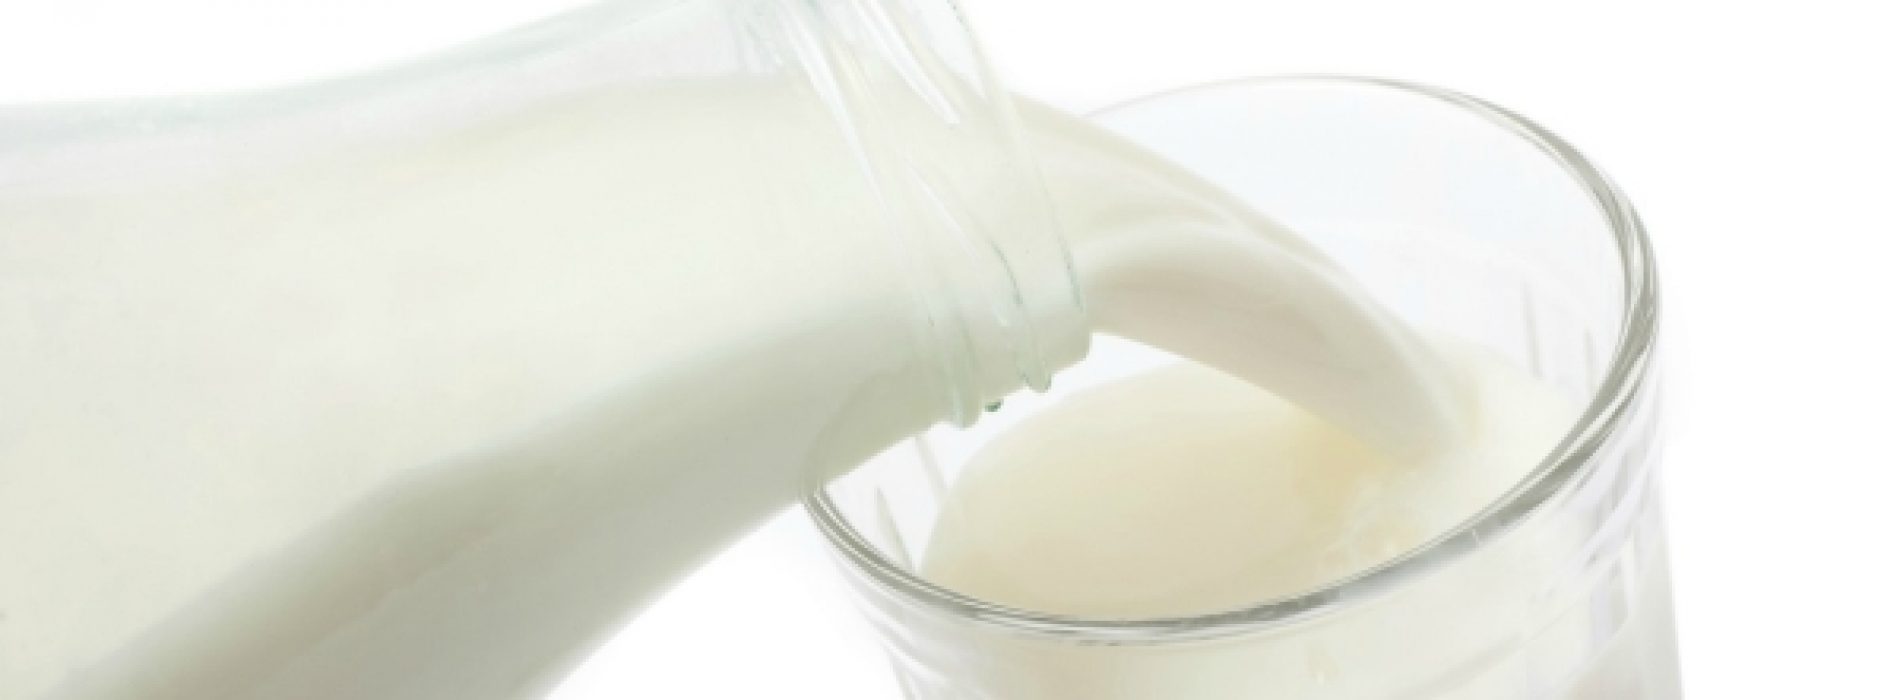 Melk remt ziekmakende bacterie